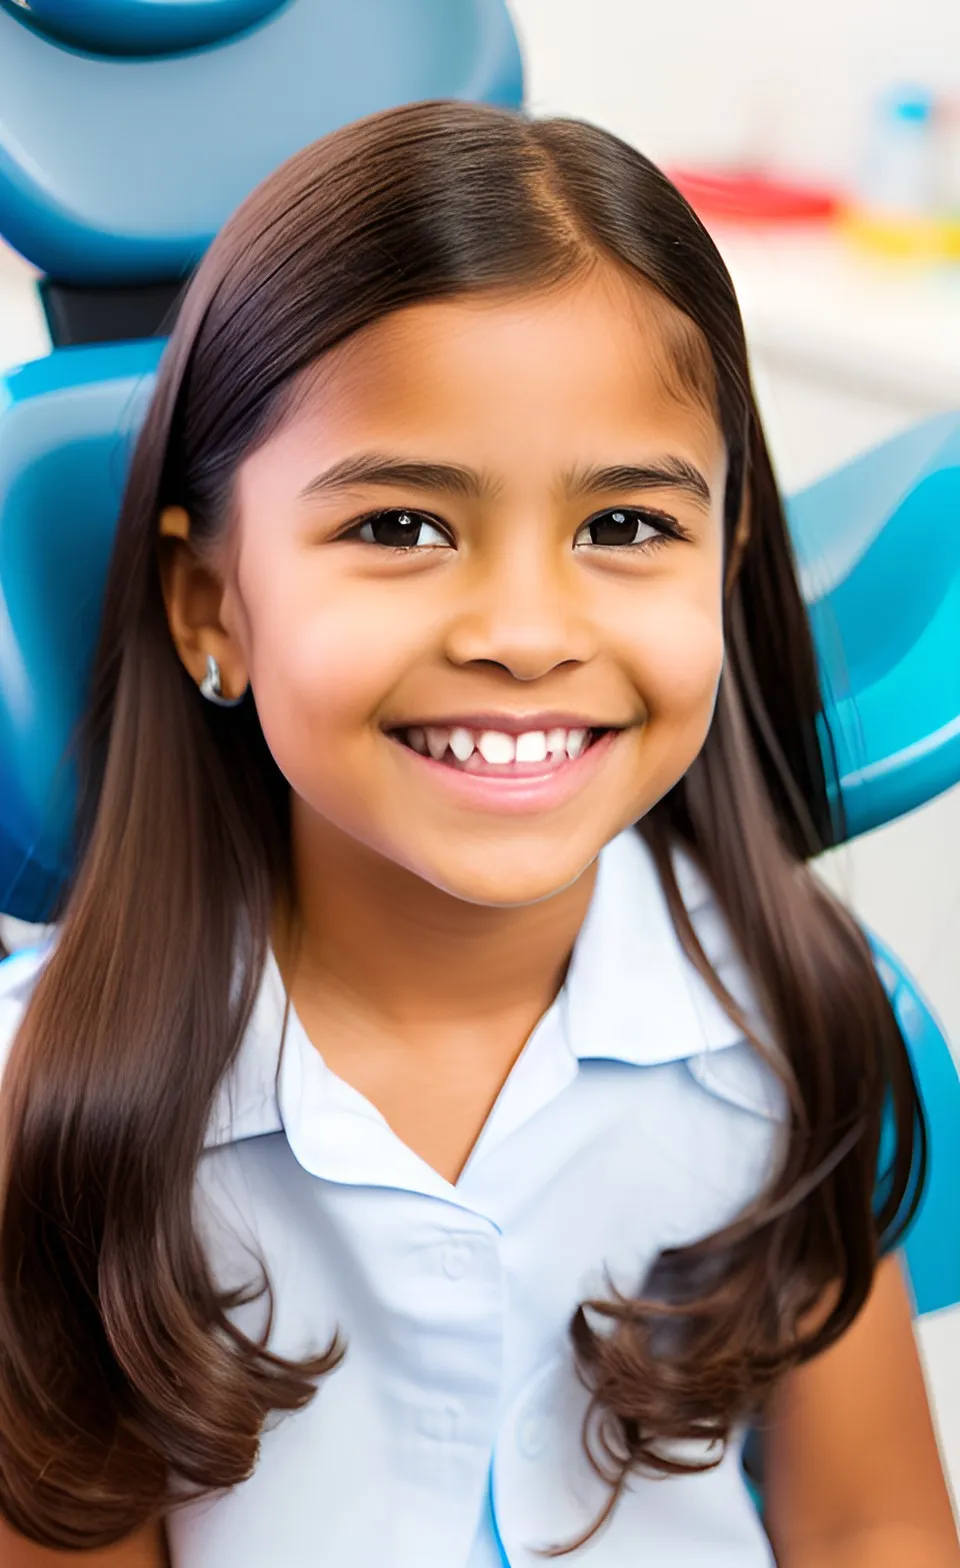 Терапевтическое лечение (детский стоматолог)